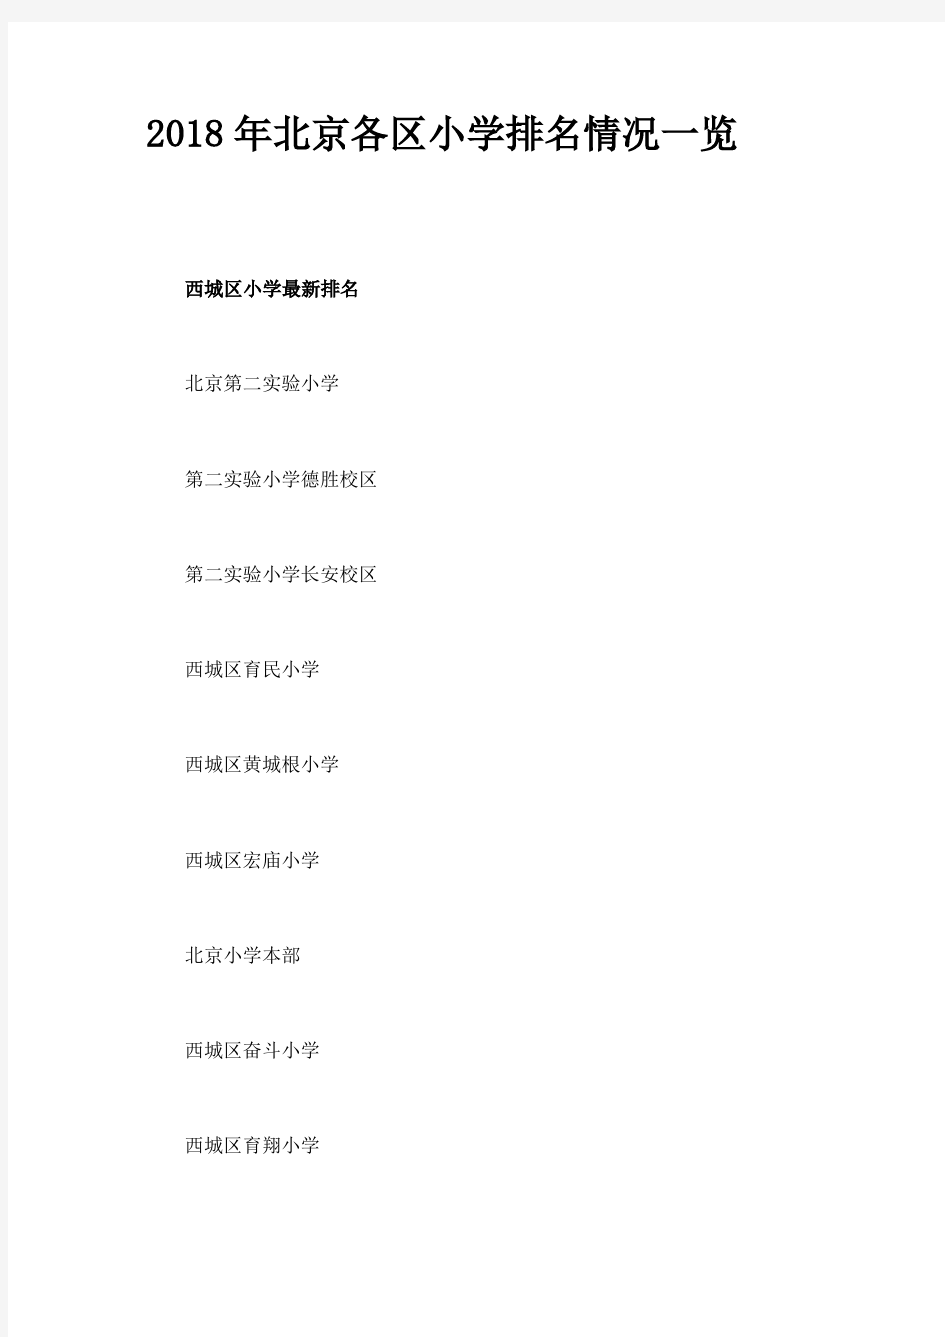 2018年北京各区小学排名情况一览